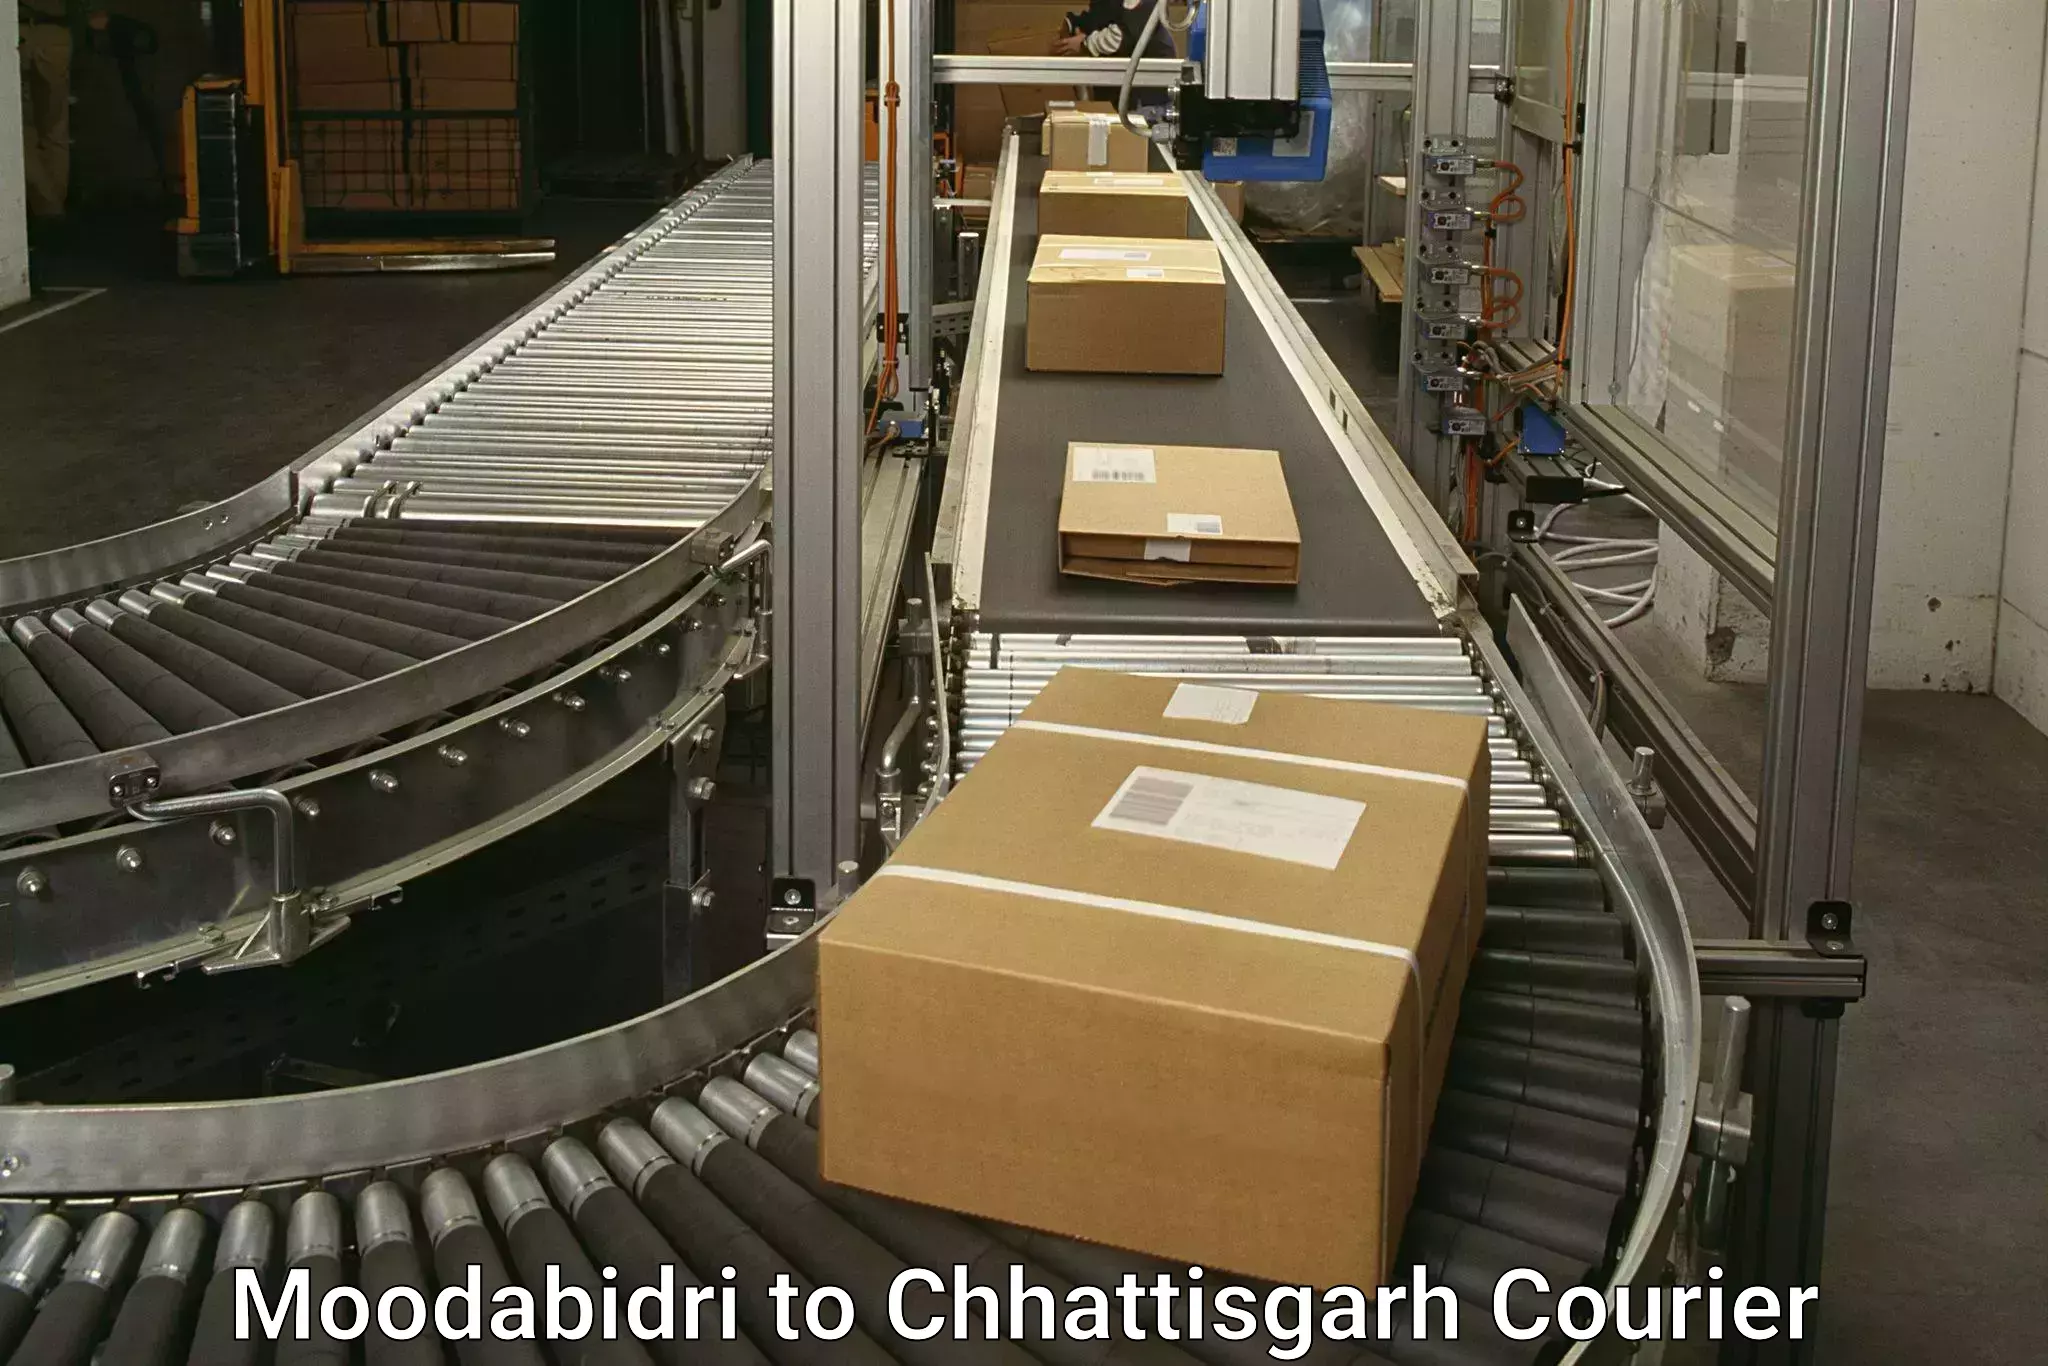 Tailored shipping services Moodabidri to Patna Chhattisgarh